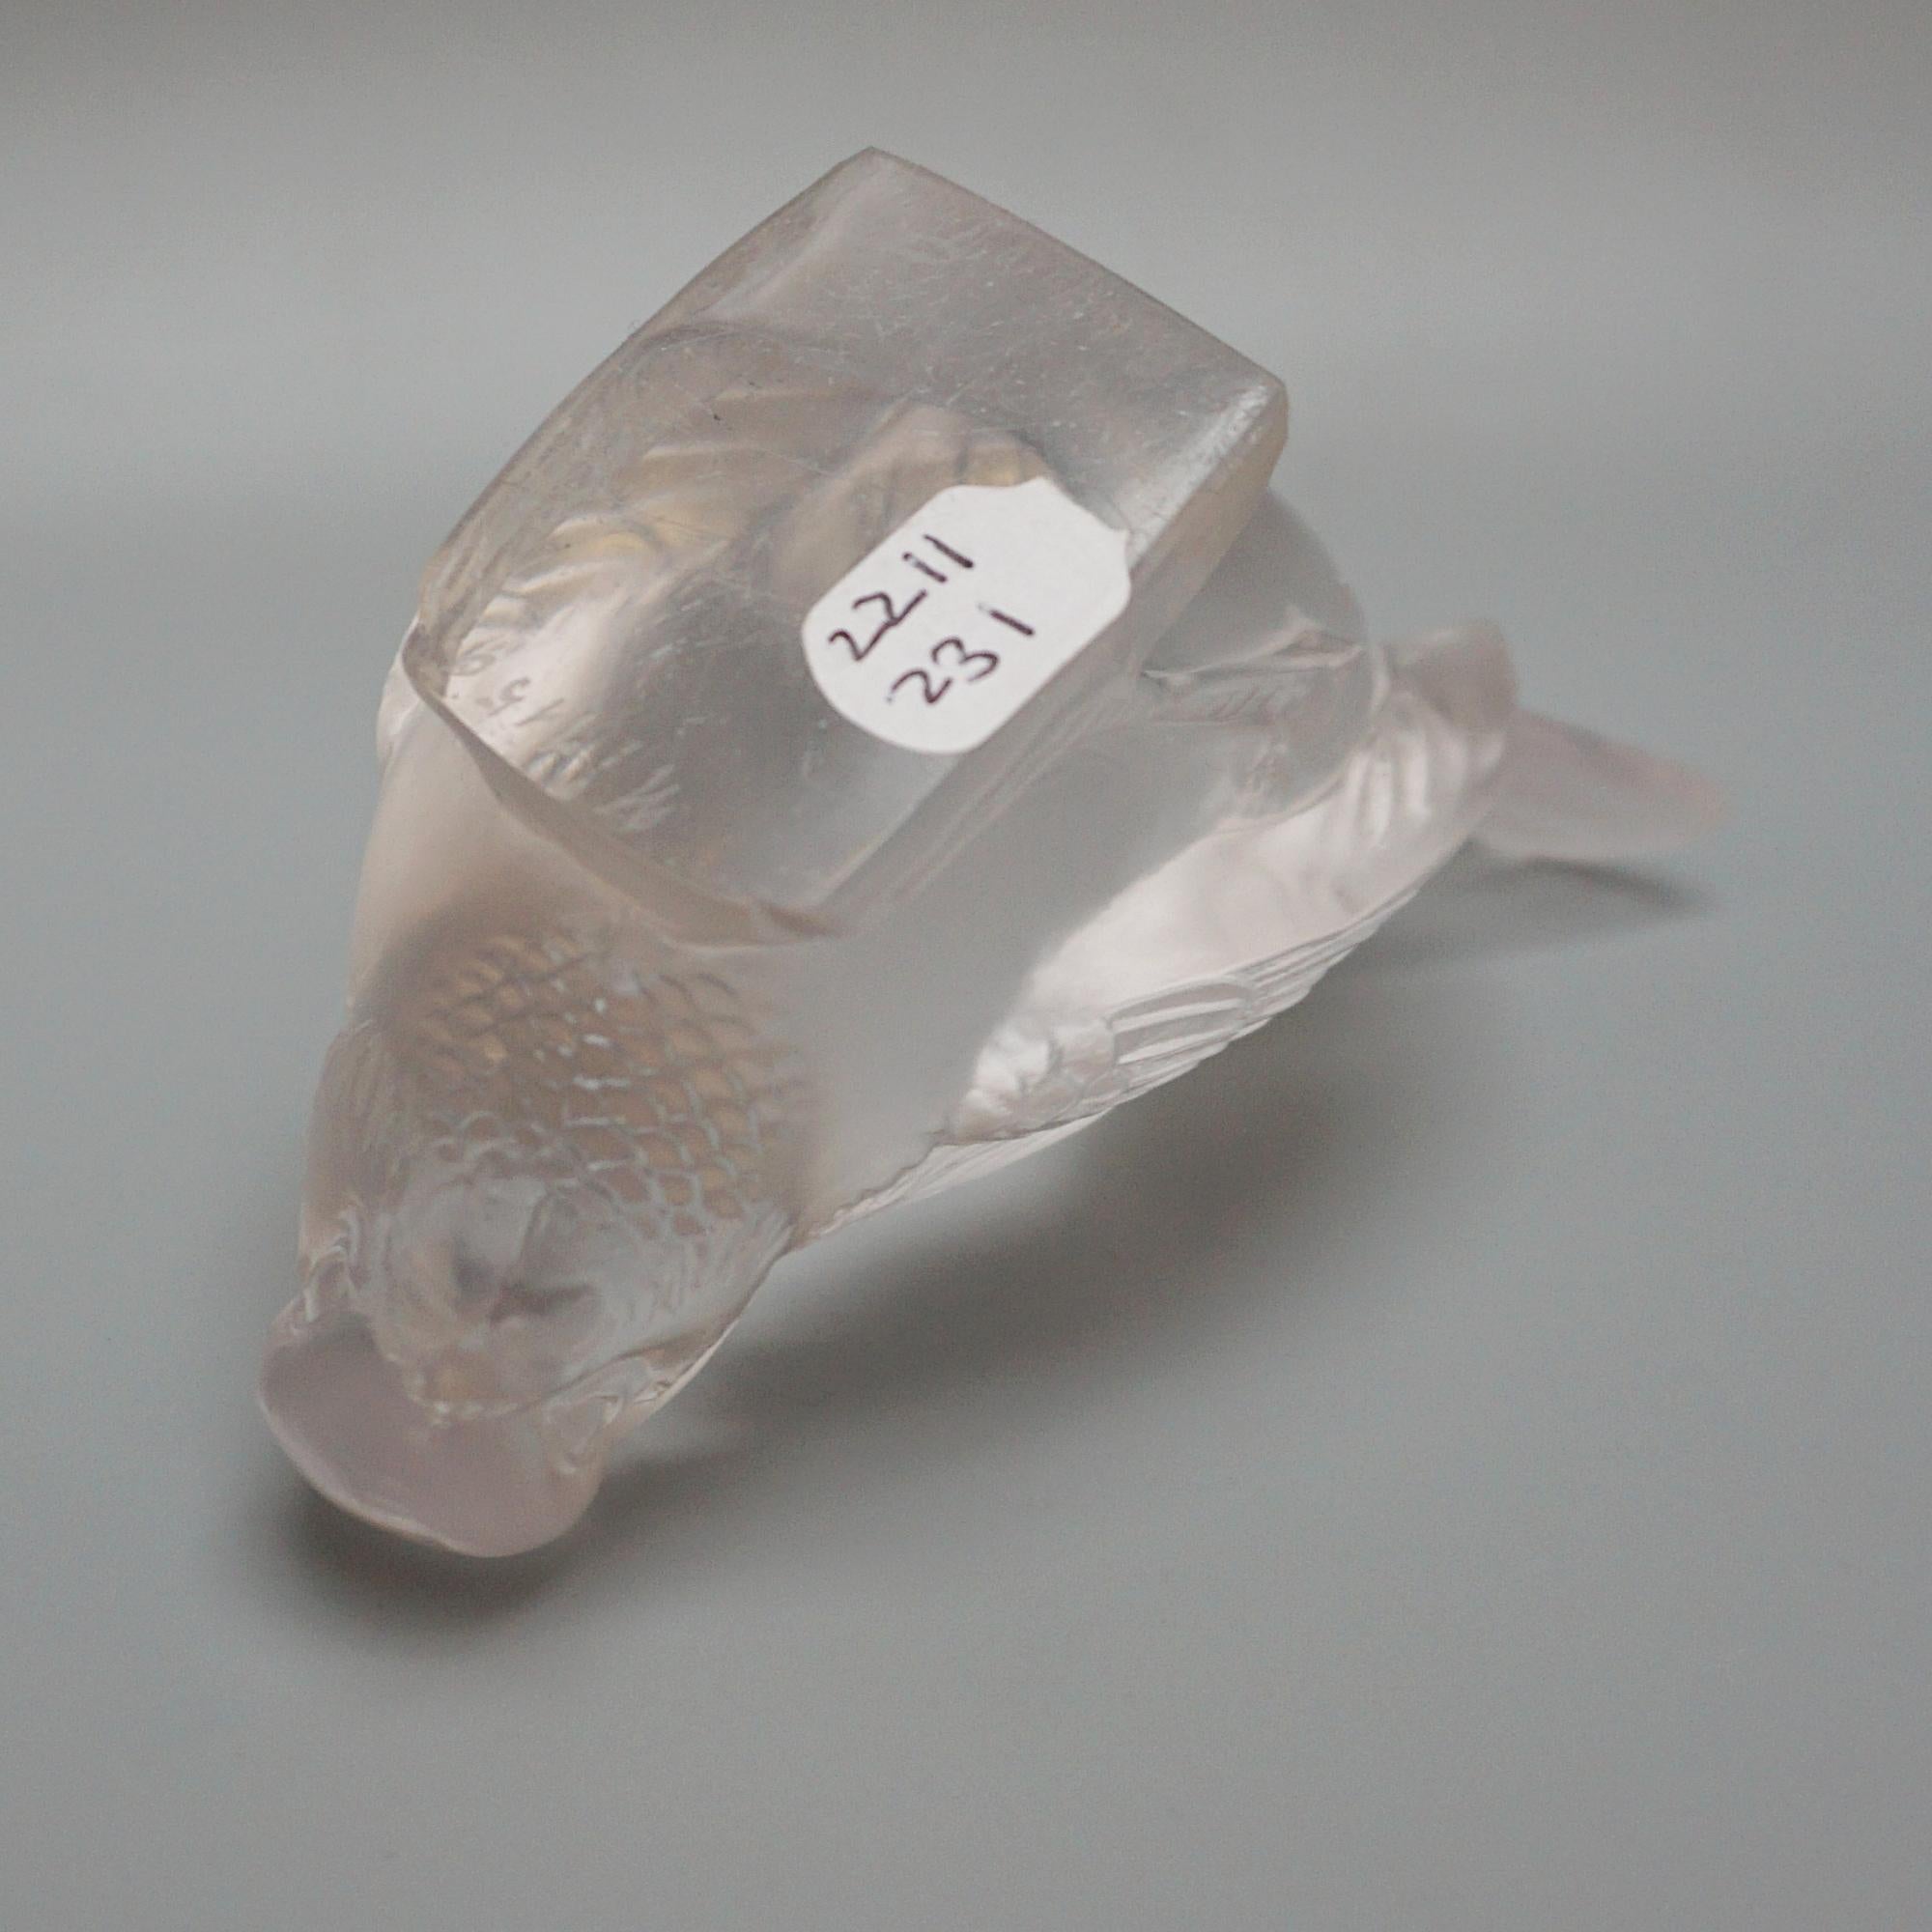  Moineau Hardi, presse-papier oiseau en verre Art déco de René Lalique (1860-1945). Figure en verre dépoli d'un moineau picorant pour trouver de la nourriture. Numéro de modèle 1150. Pochoir gravé R Lalique France sur la face inférieure.